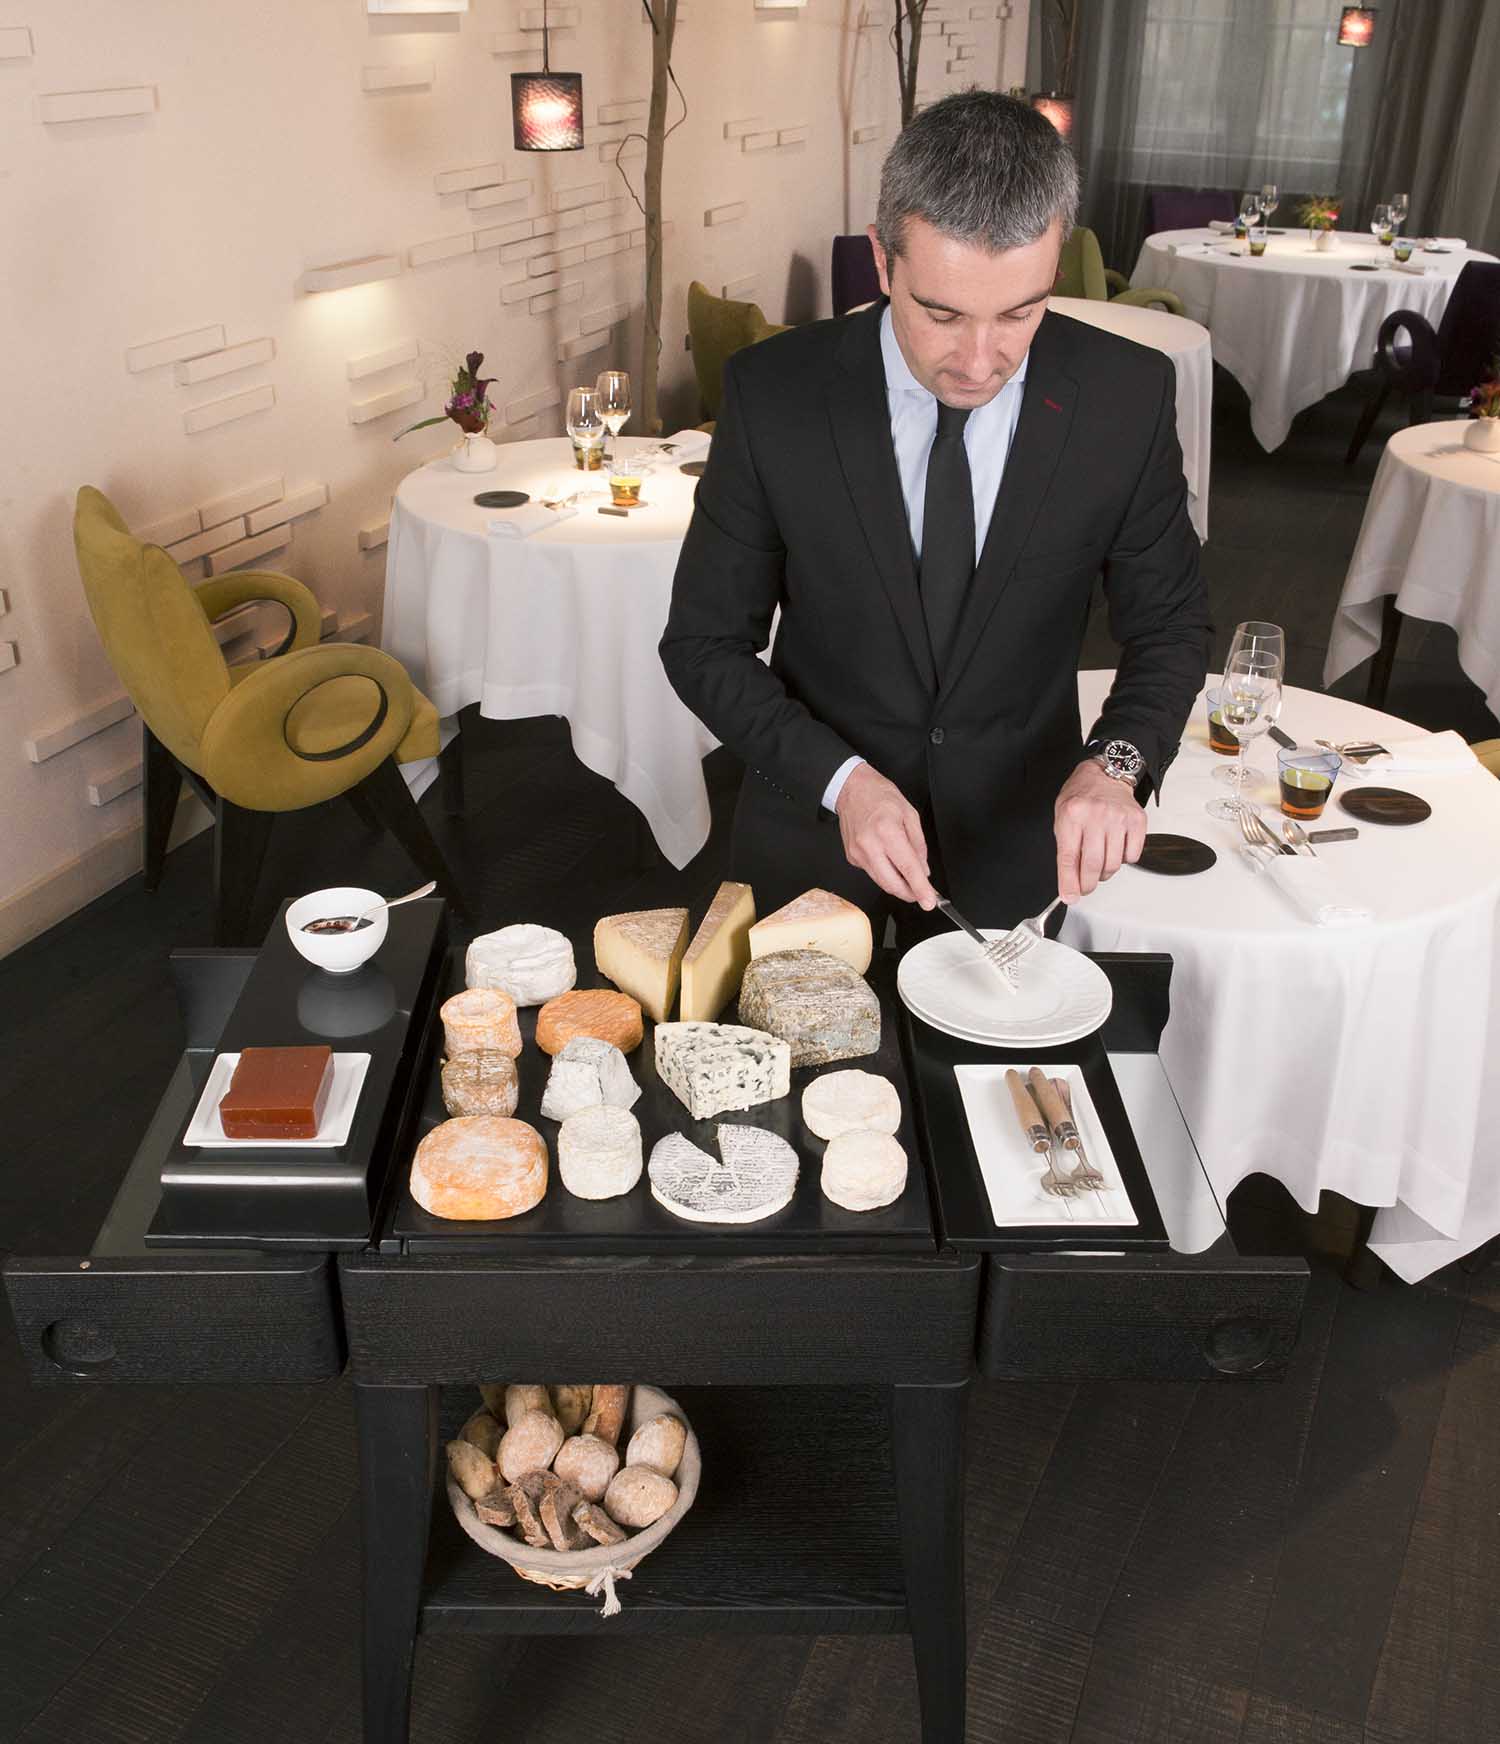 Chariot à fromages KEZA de la marque QUISO utilisé dans le restaurant Michel Sarran** par Arnaud Ducros, directeur de salle pour le service du fromage, 2014